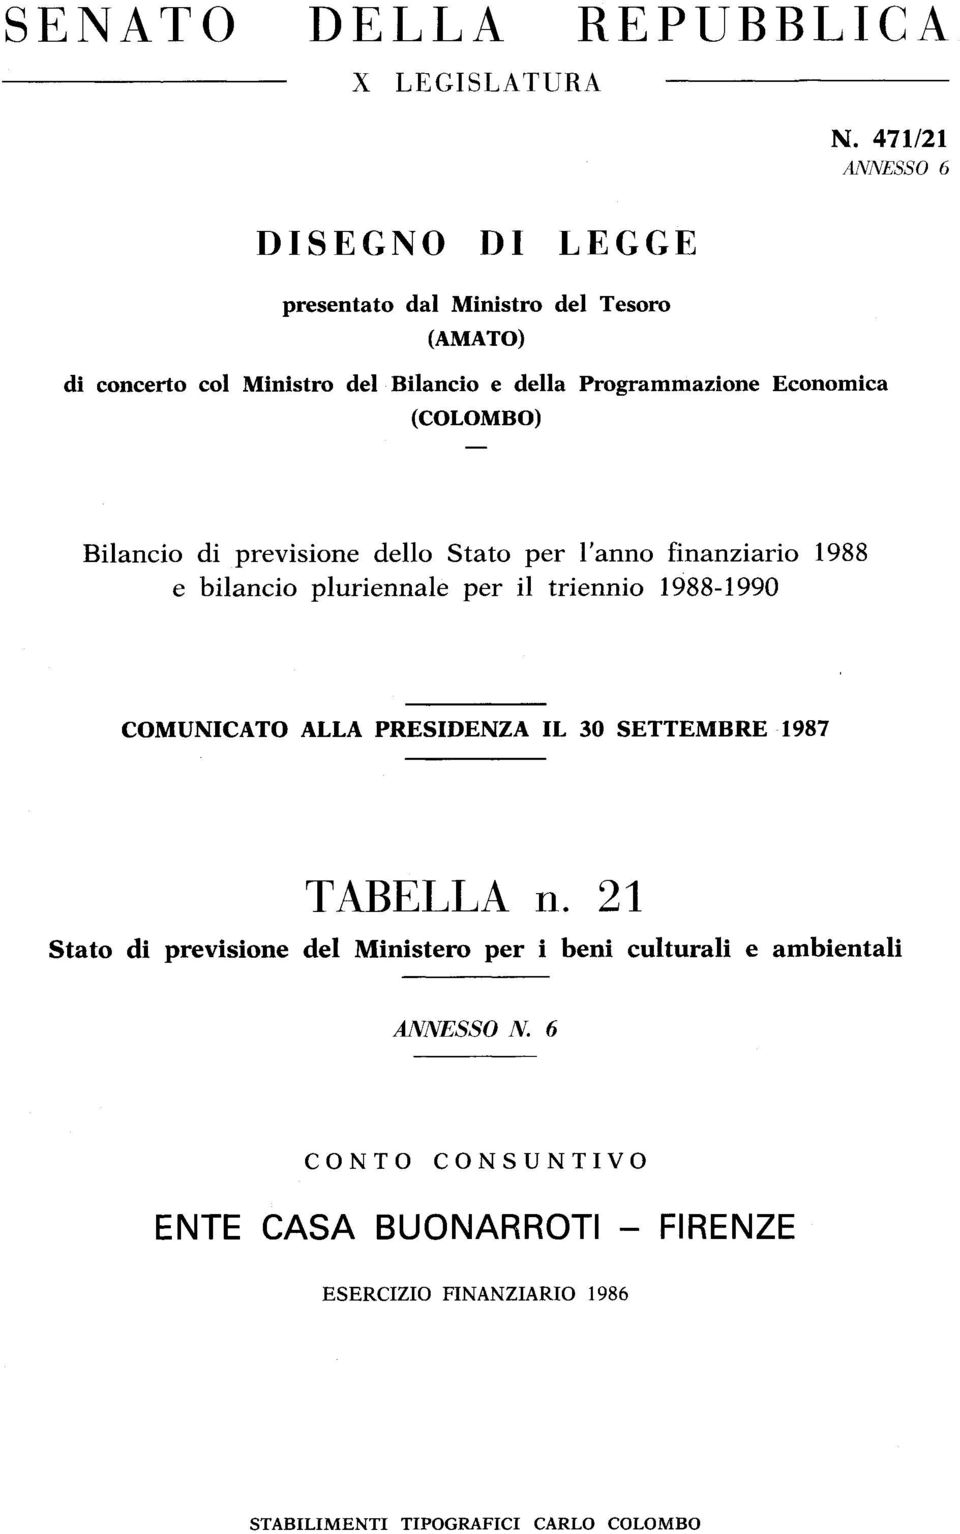 Economica (COLOMBO) Bilancio di previsione dello Stato per l'anno finanziario 1988 e bilancio pluriennale per il triennio 1988-1990